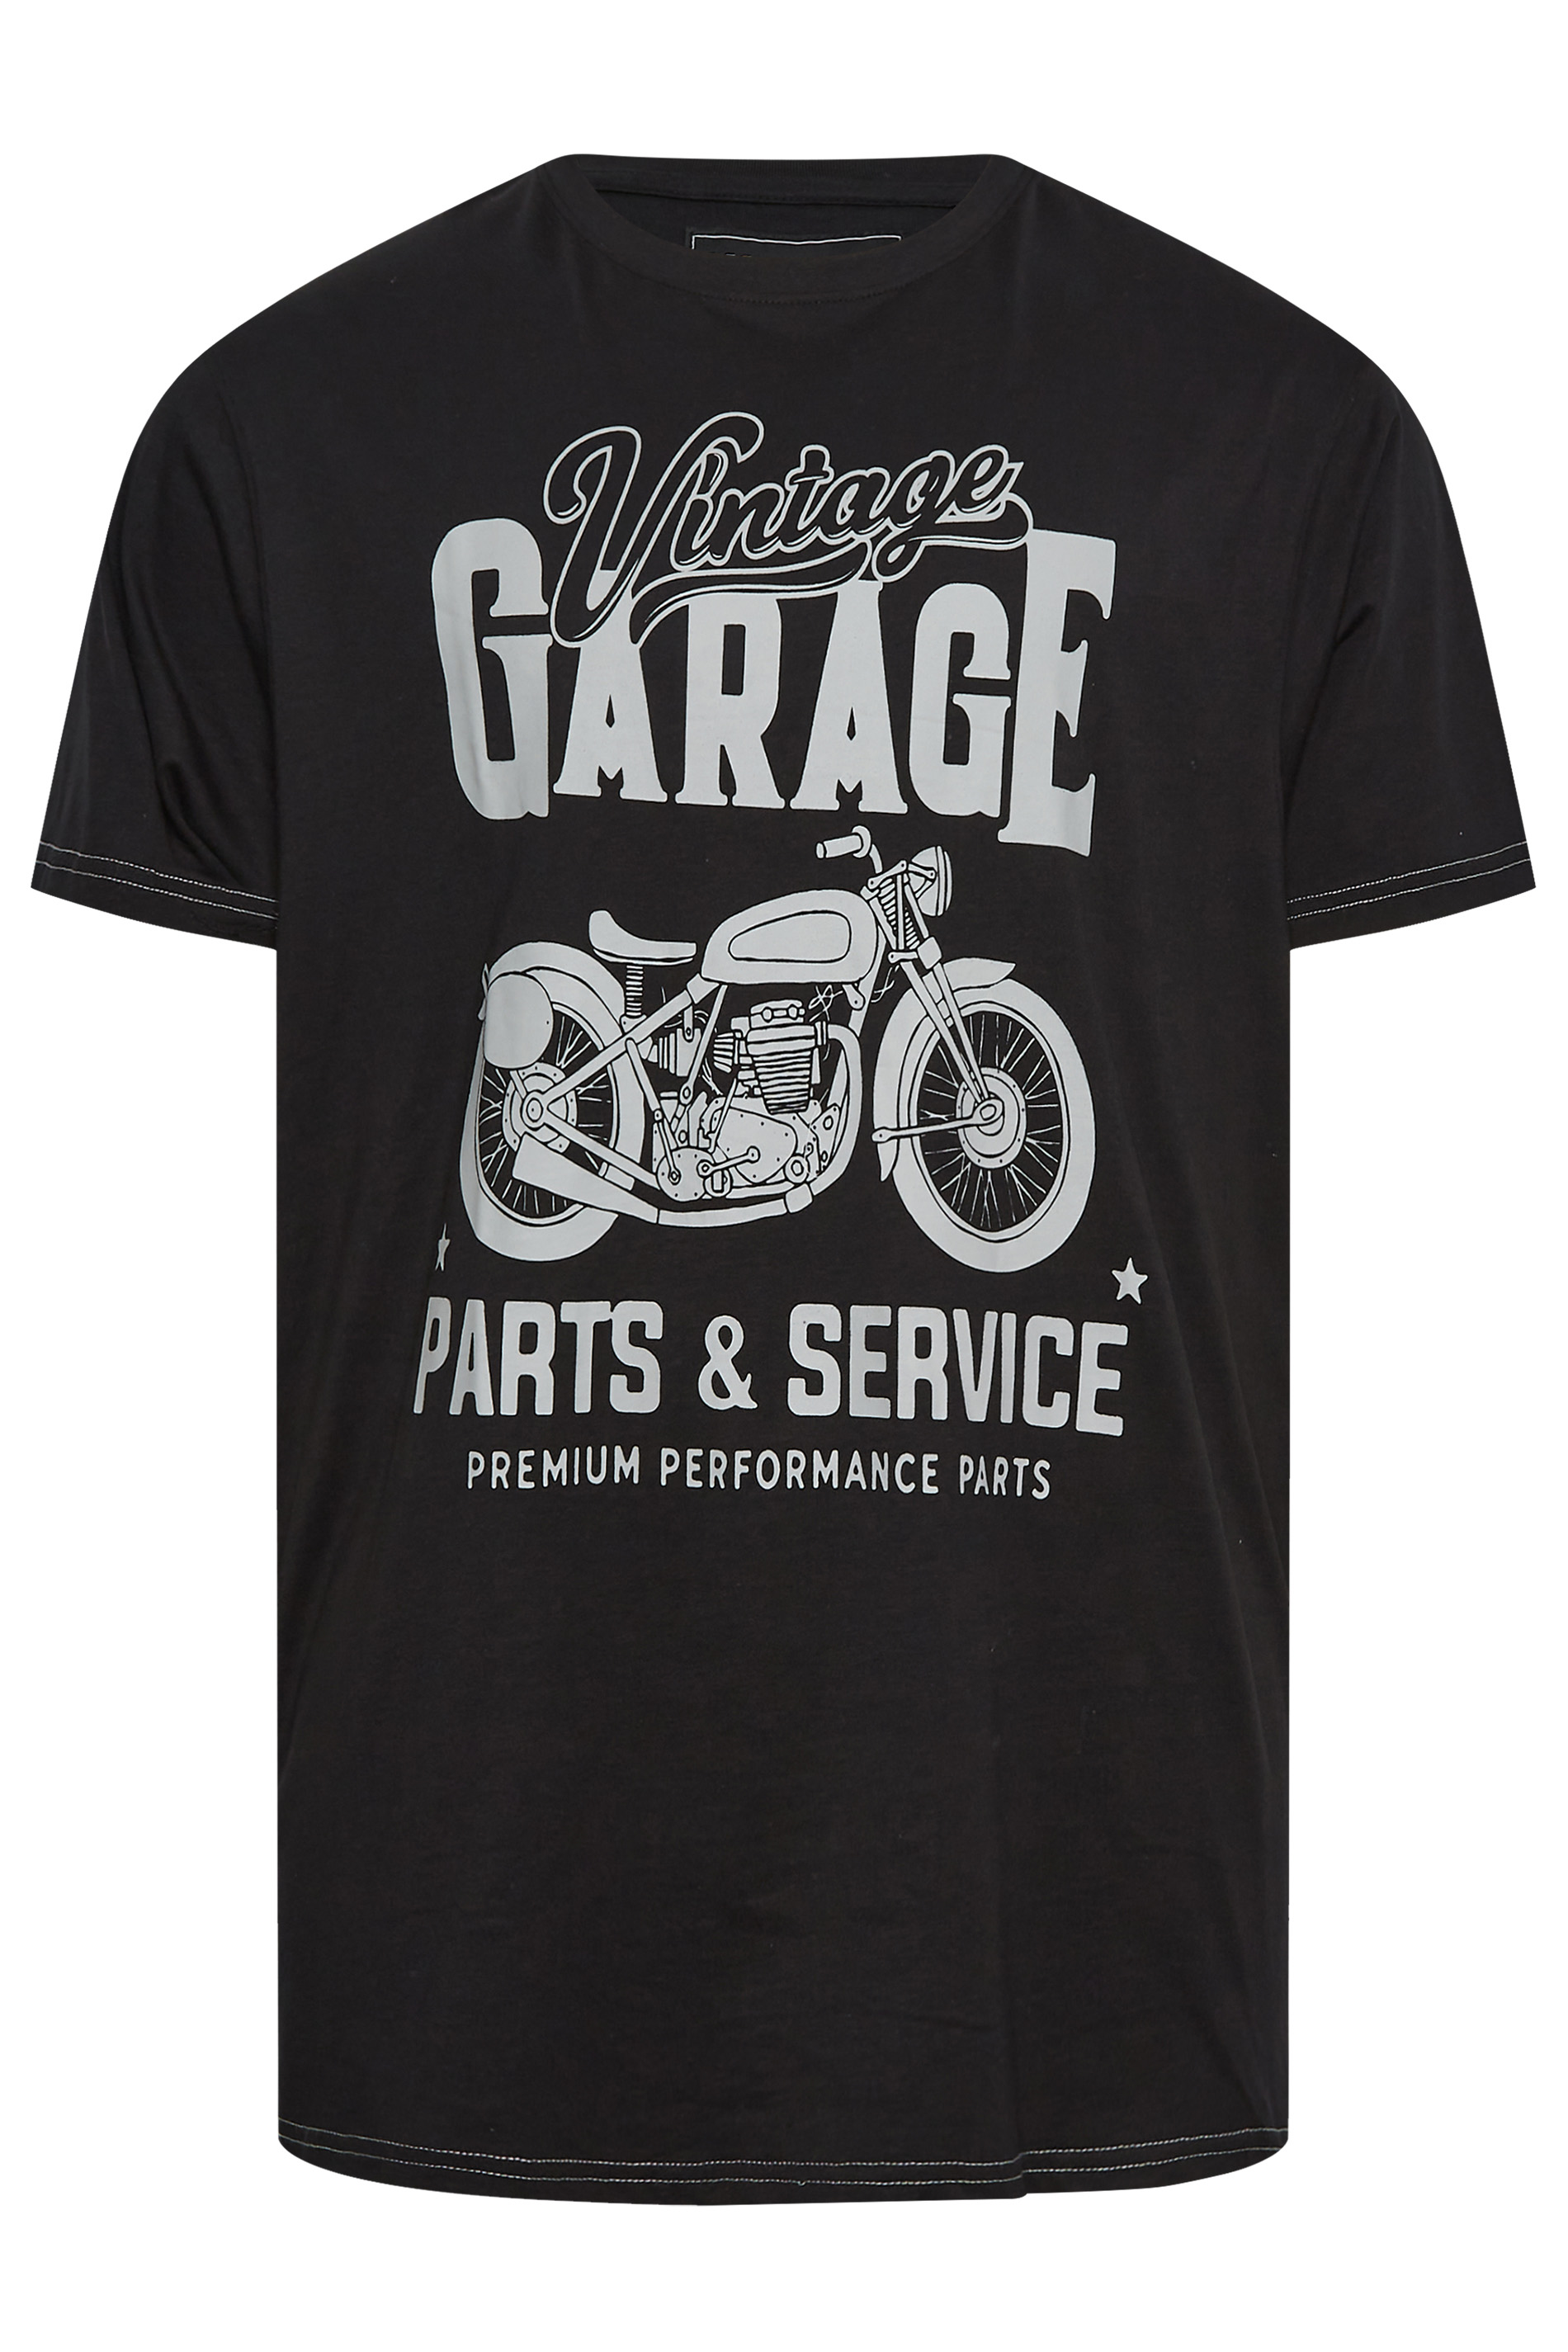 KAM Big & Tall Black Vintage Garage Motorcycle T-Shirt | BadRhino 3